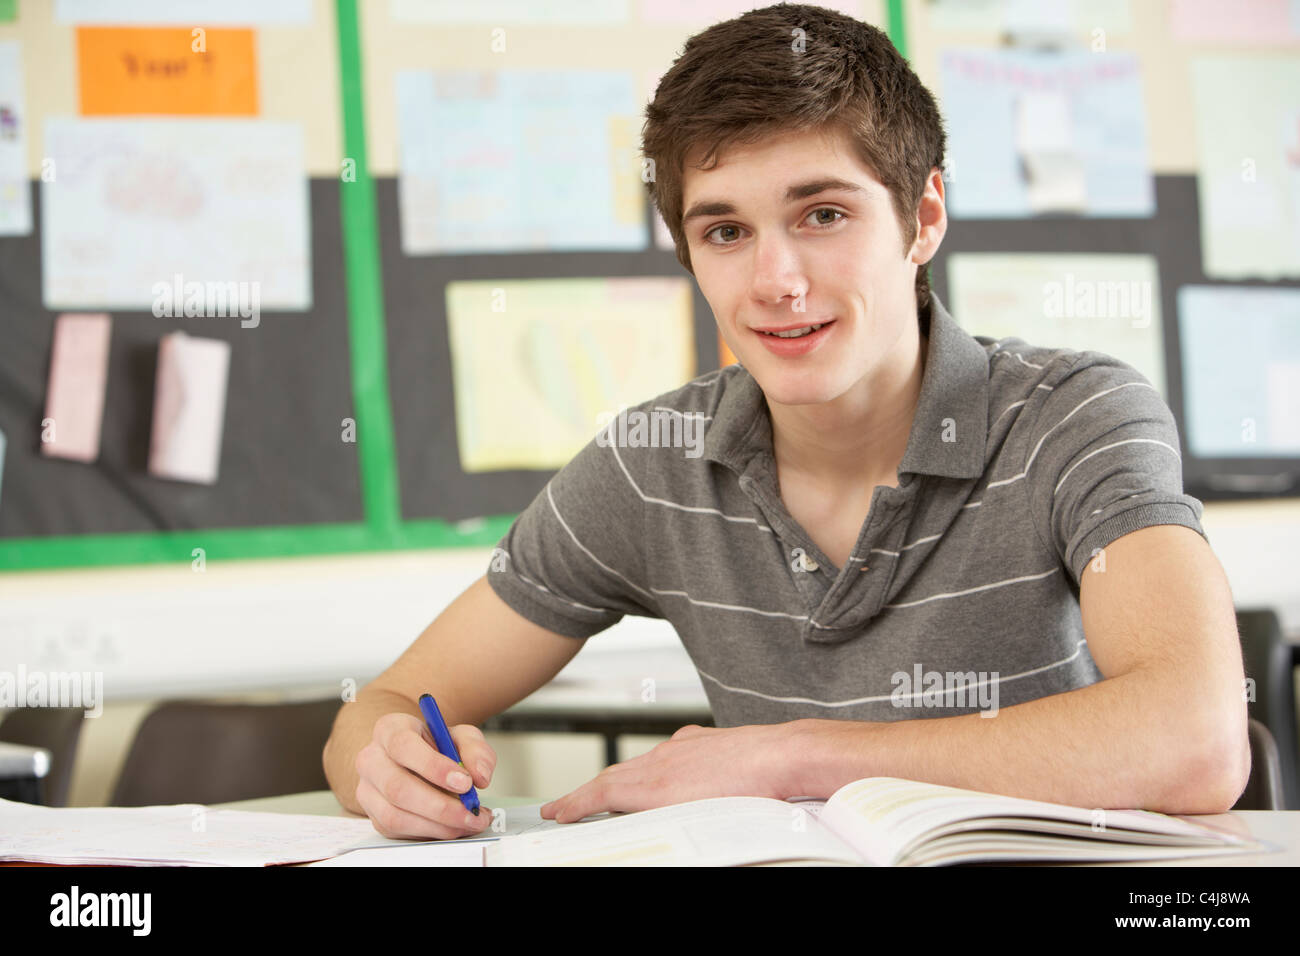 Männliche Teenager Studierender im Klassenzimmer Stockfoto